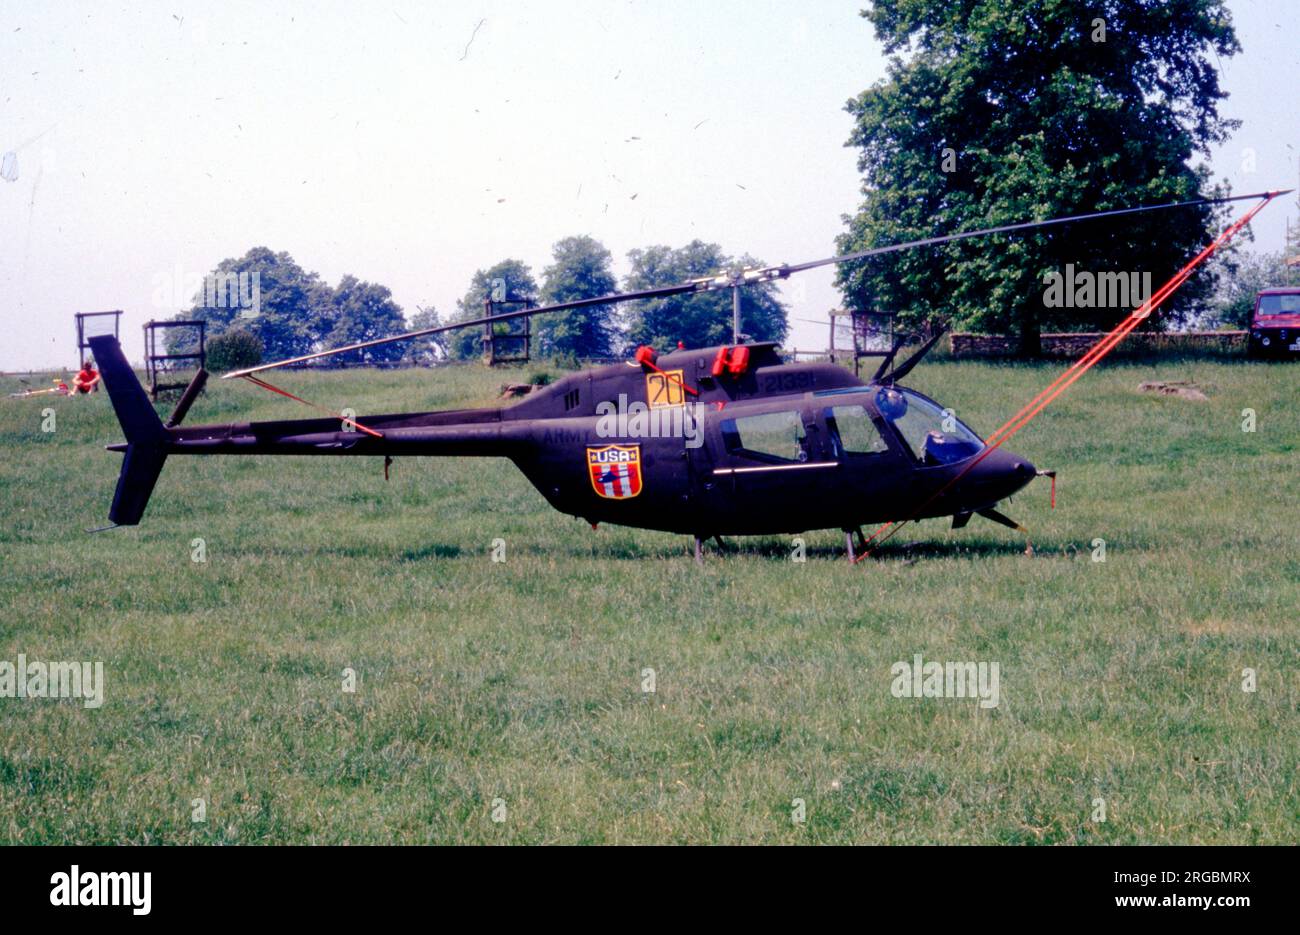 Armée des États-Unis - Bell OH-58A Kiowa 72-21390 (msn 42056), au Château Ashby pour les Championnats du monde d'hélicoptères, le 26 juin 1986, avec le numéro de compétition '20'. Banque D'Images